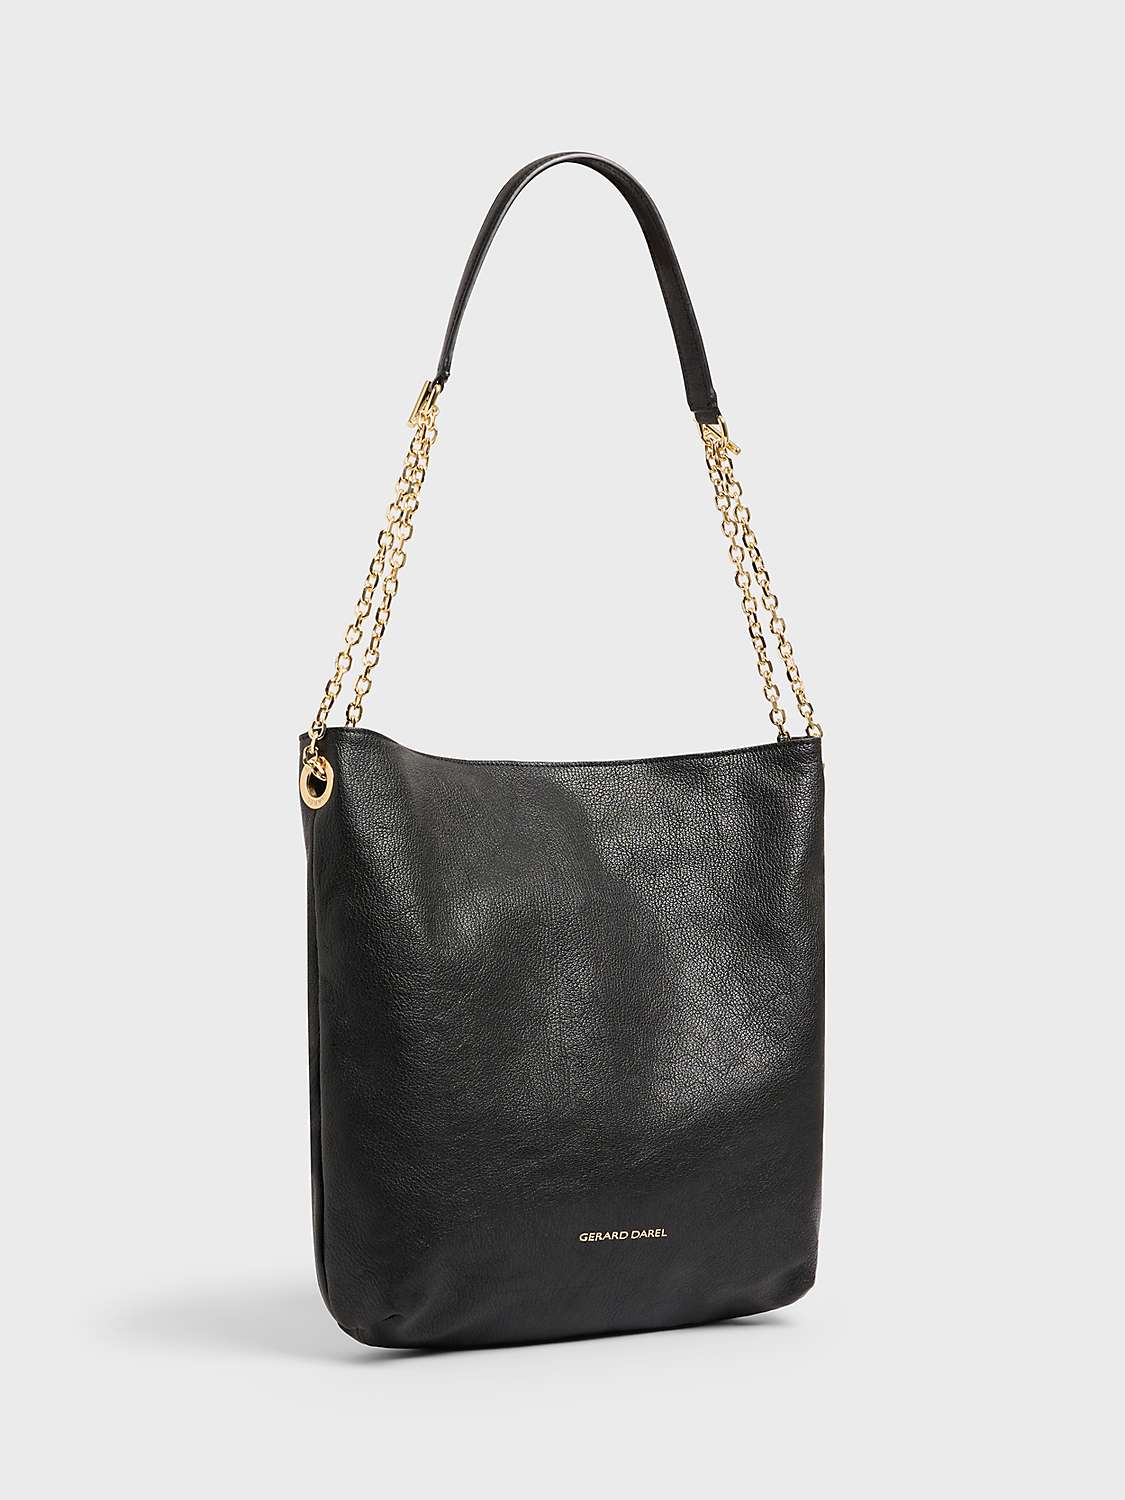 Buy Gerard Darel Charlotte Leather Handbag, Black Online at johnlewis.com